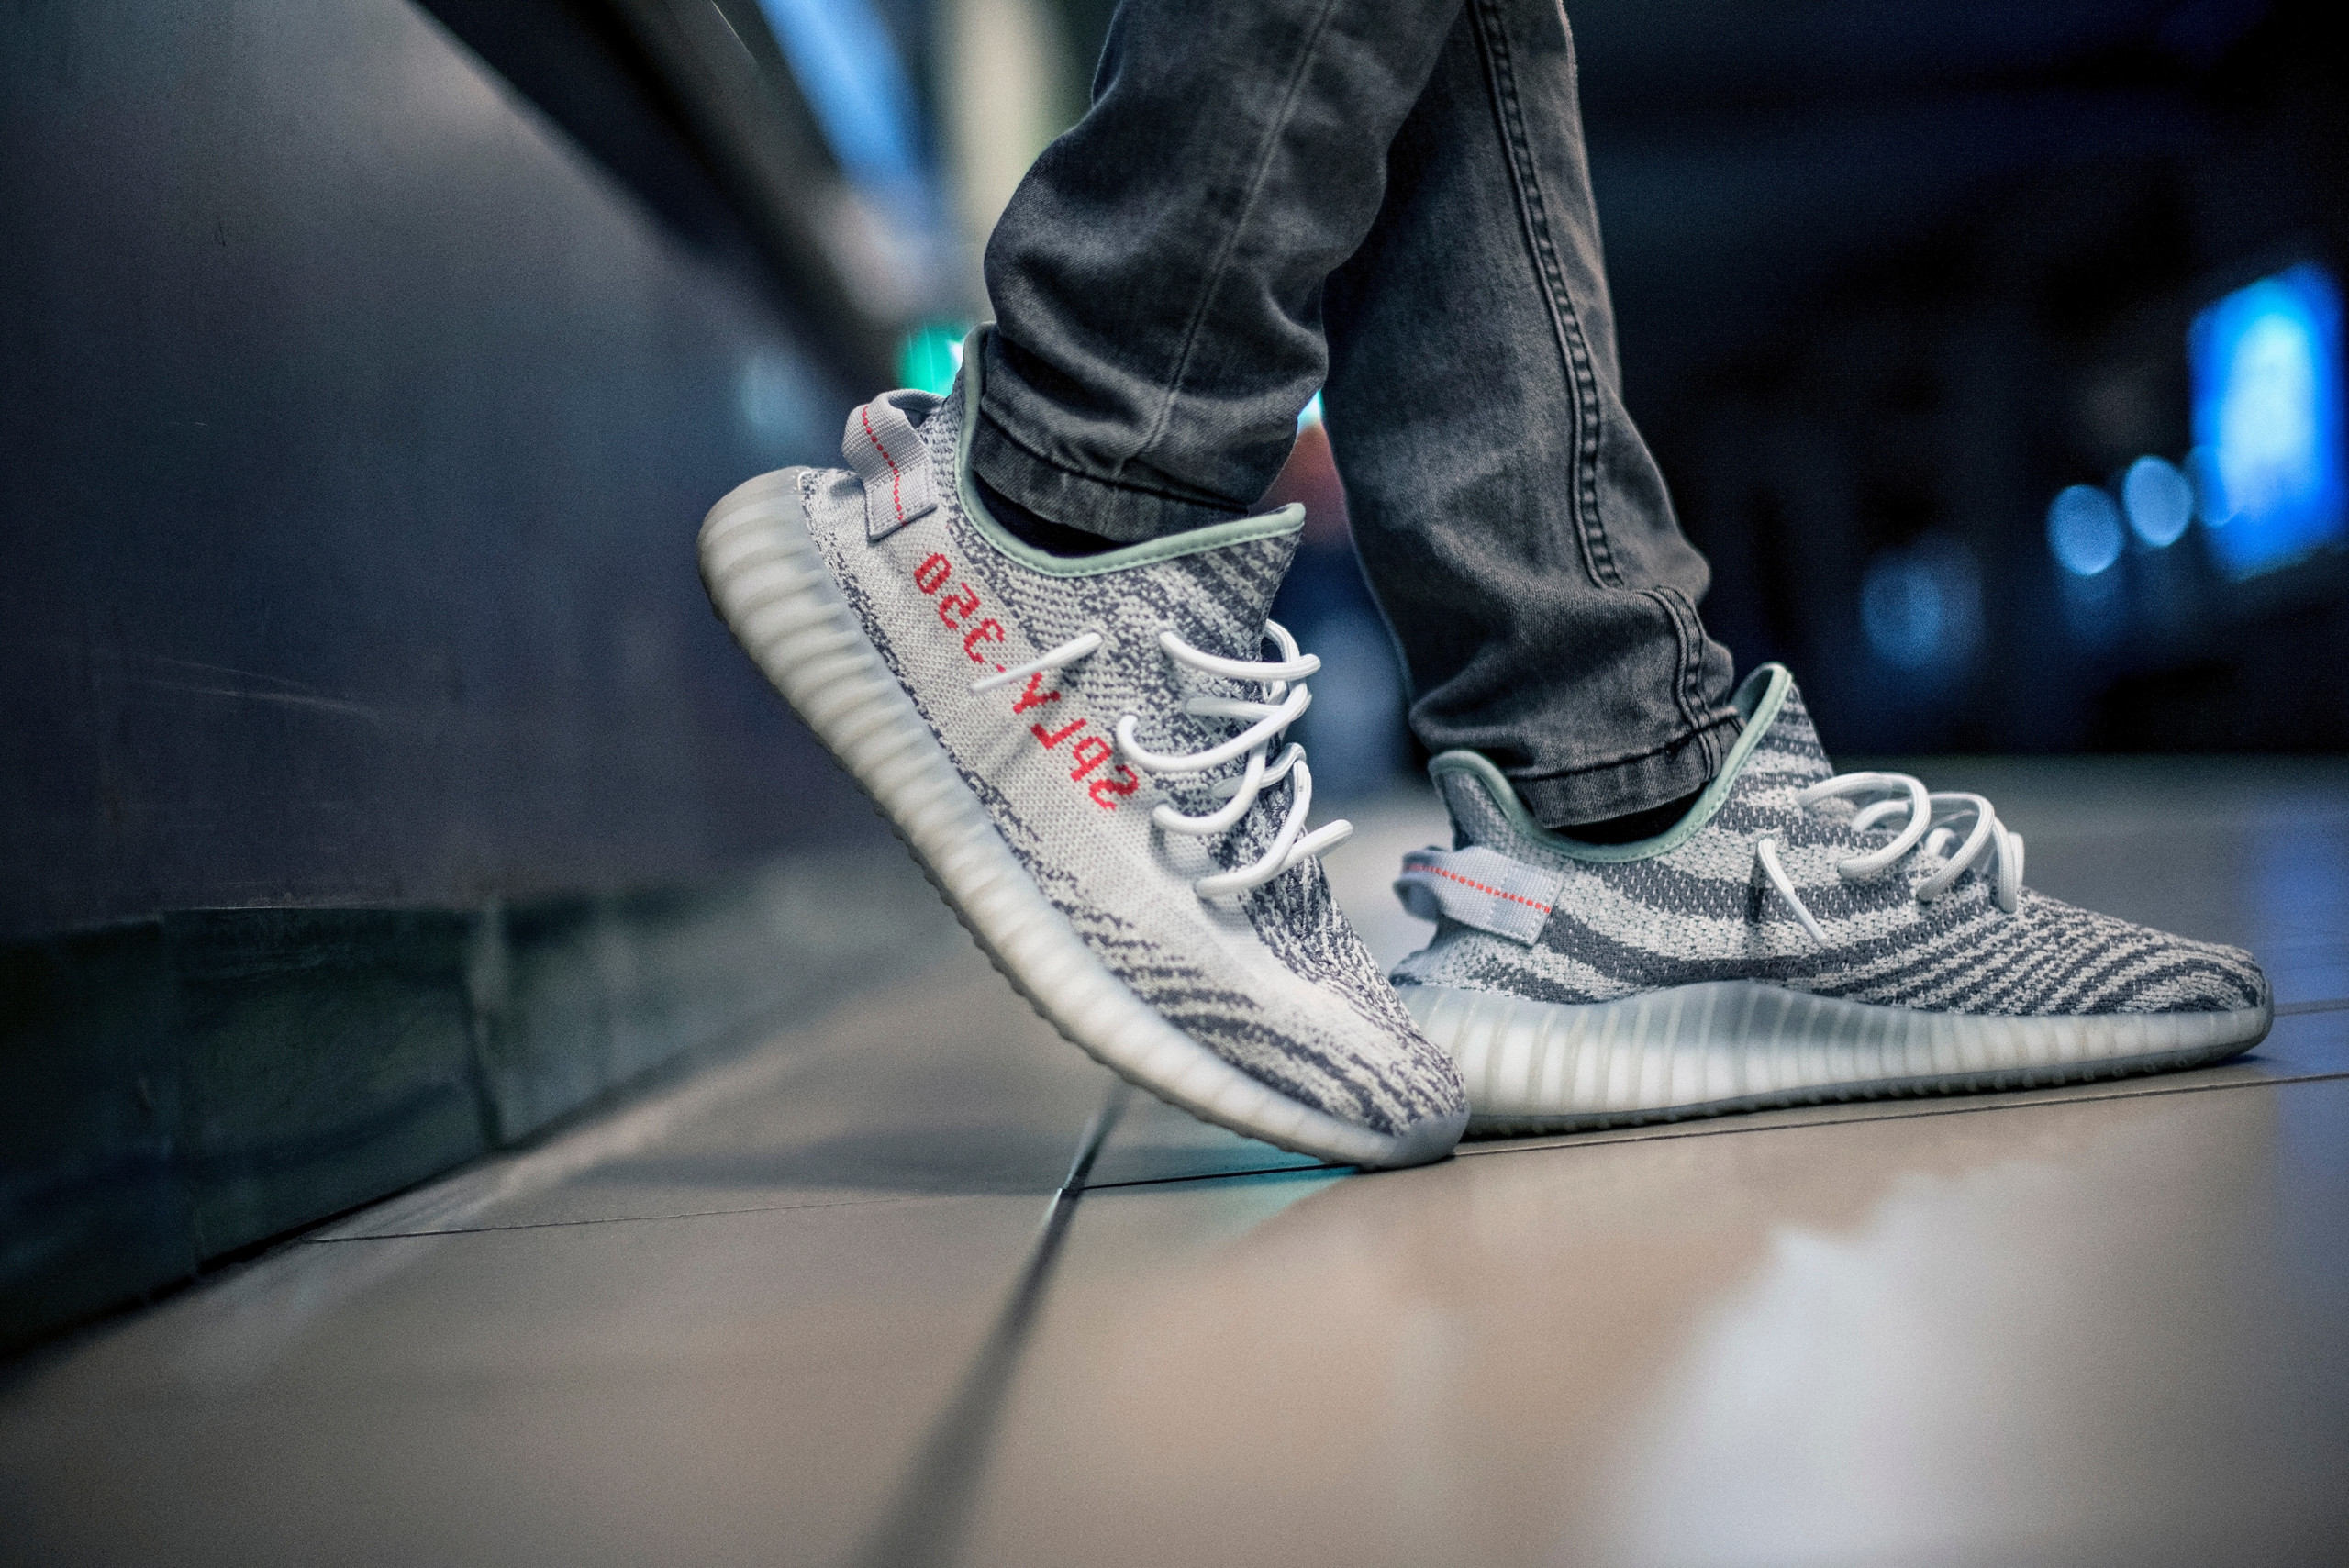 Die Bestellungen der „Yeezy“-Sneaker übertrifft Erwartungen von Adidas